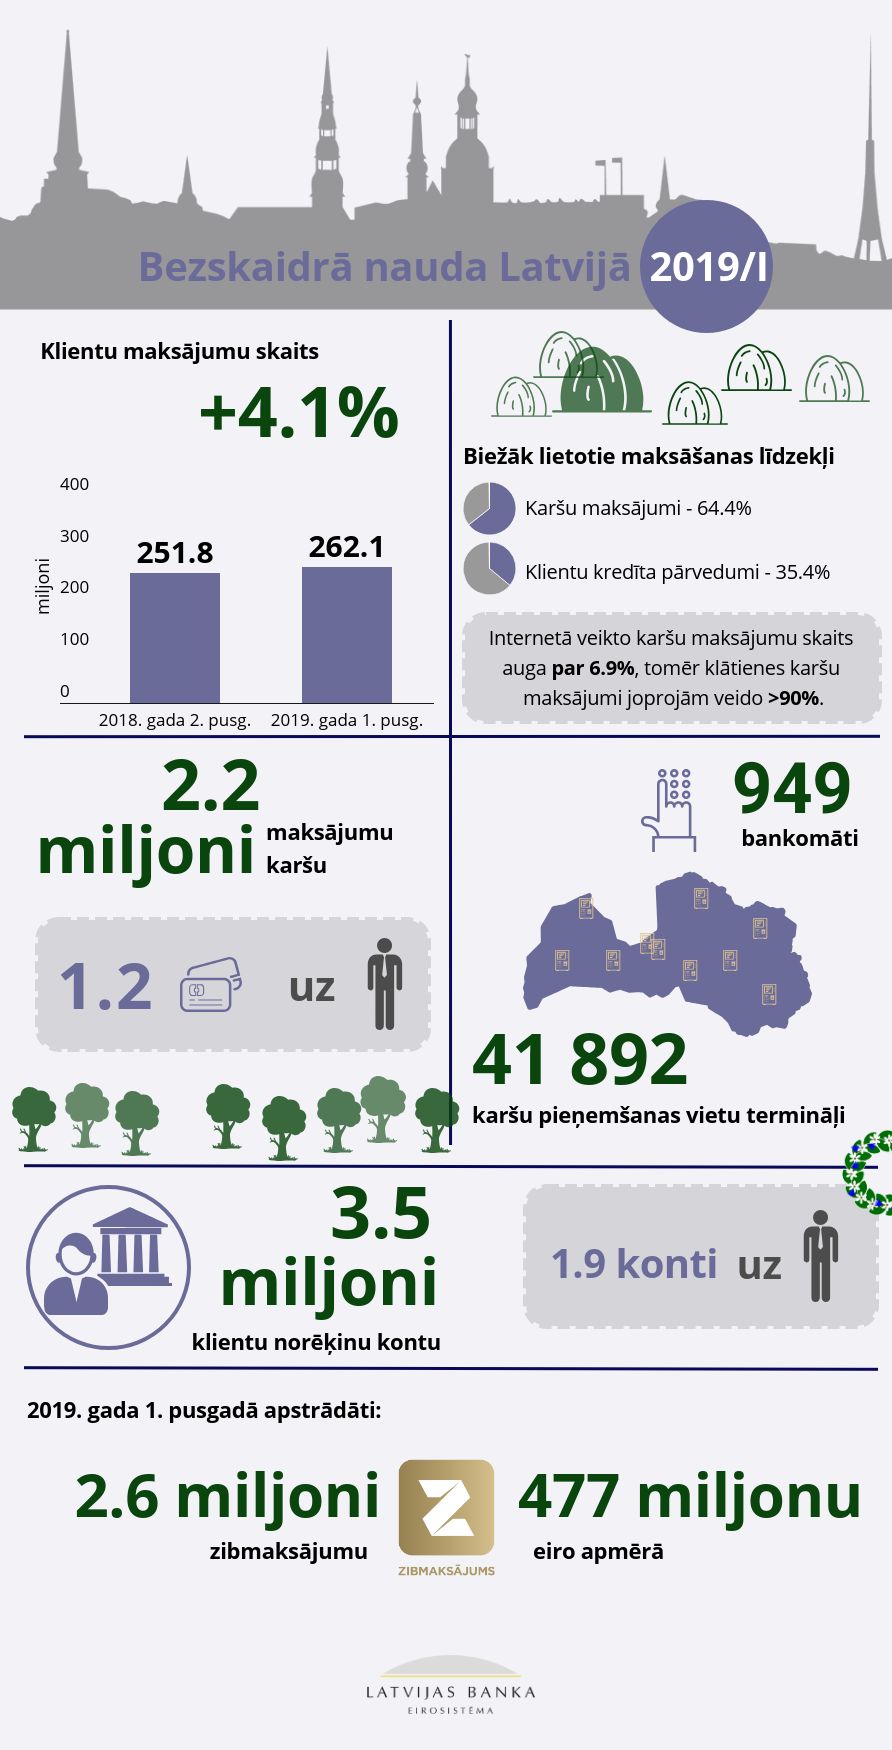 Bezskaidra nauda Latvija infografika 2019I